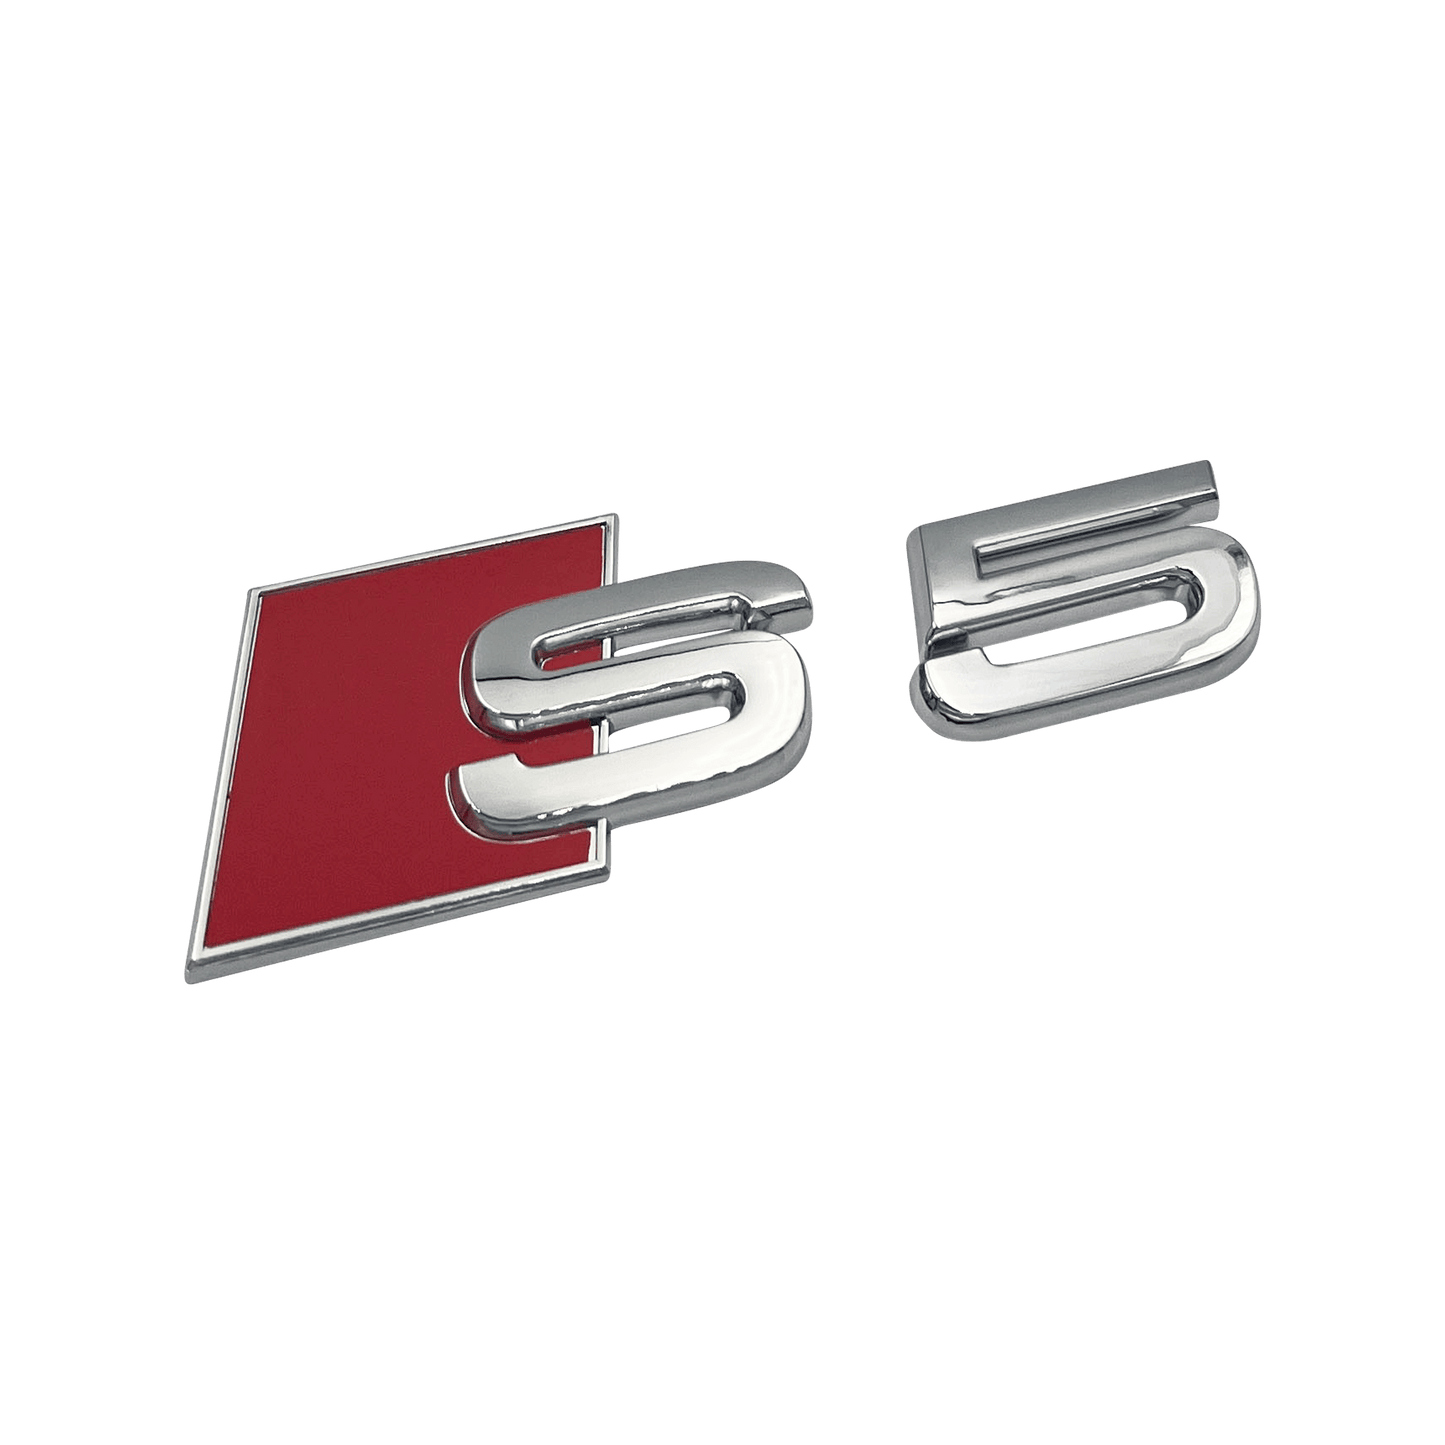 Chrome Audi S5 Rear Emblem Badge 